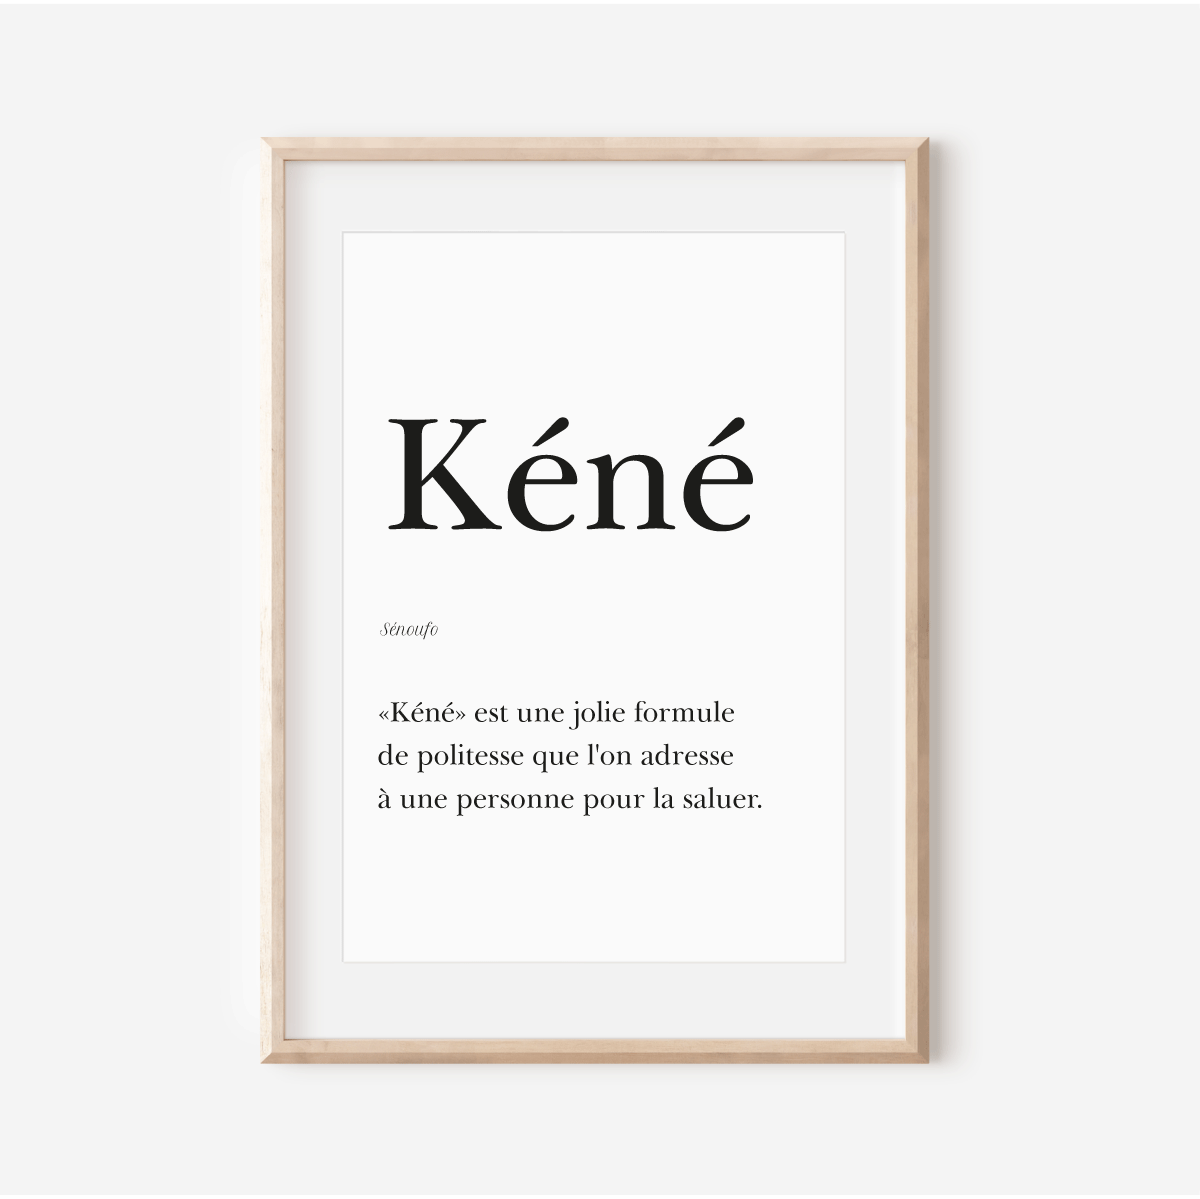 Affiche "Kéné" - "Bonjour" en Sénoufo